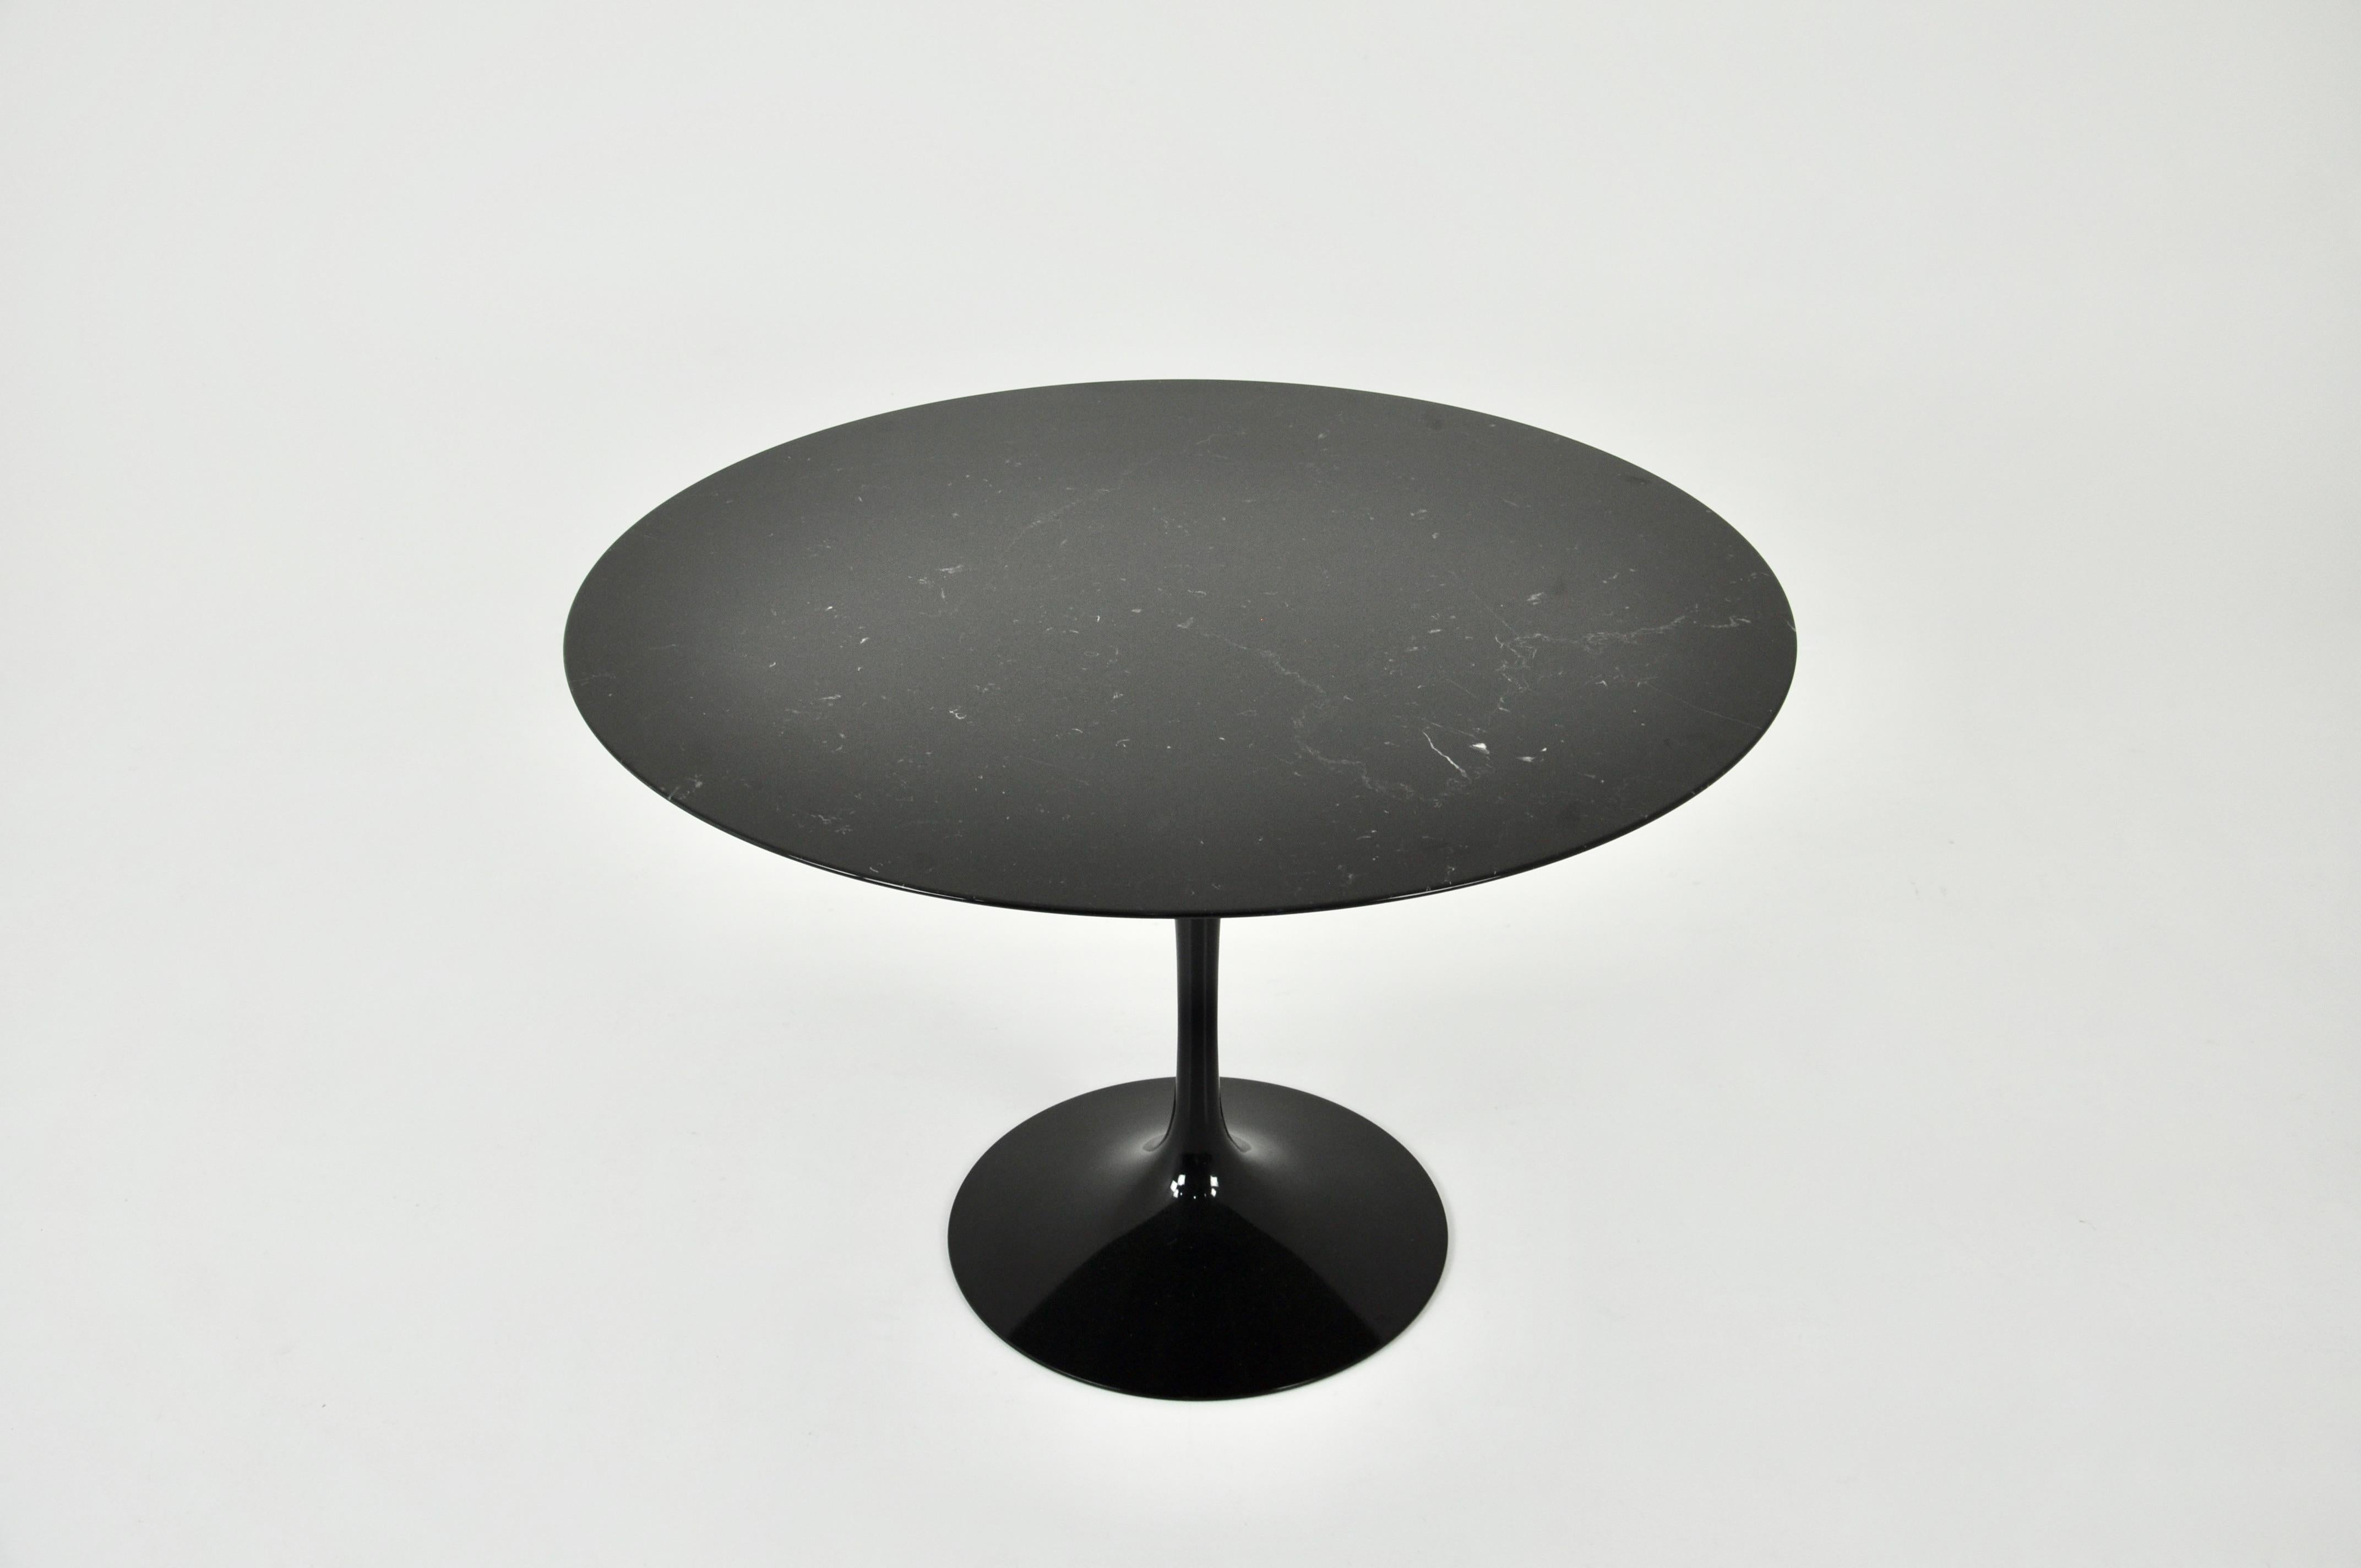 Table en marbre noir avec pieds en aluminium noir. Estampillé knoll sous le pied et l'étagère. Usure due au temps et à l'âge de la table.